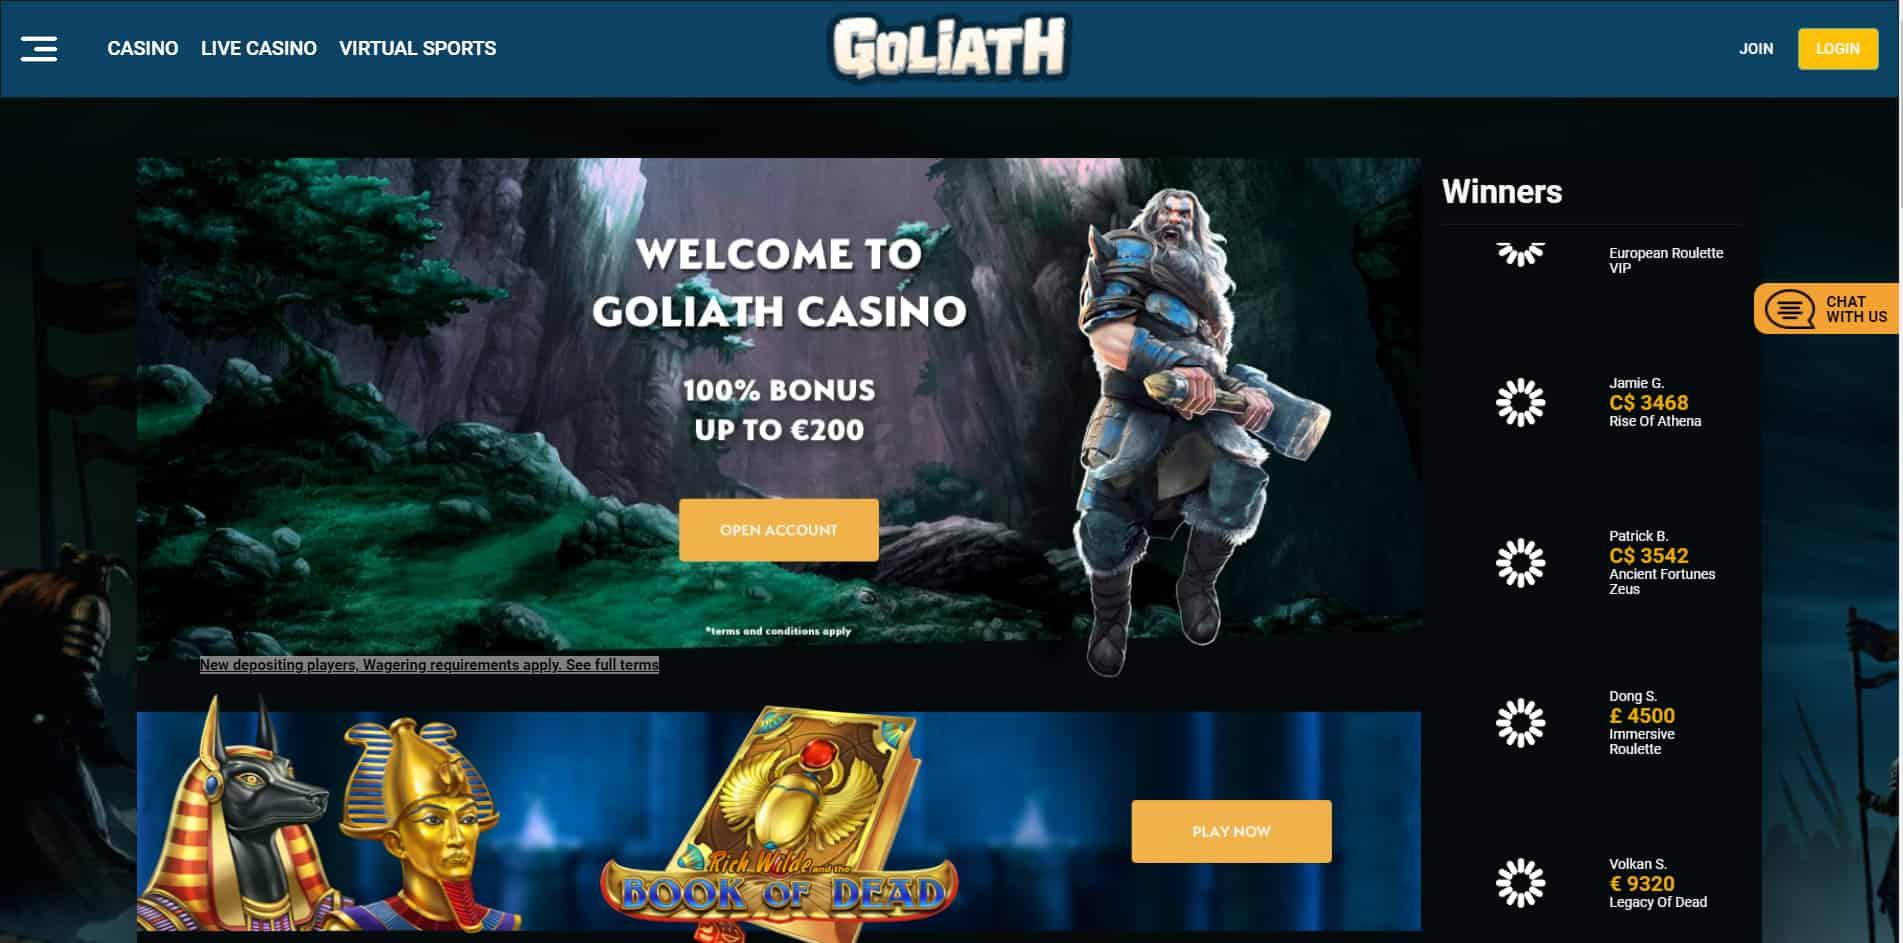 Goliath casino homepage